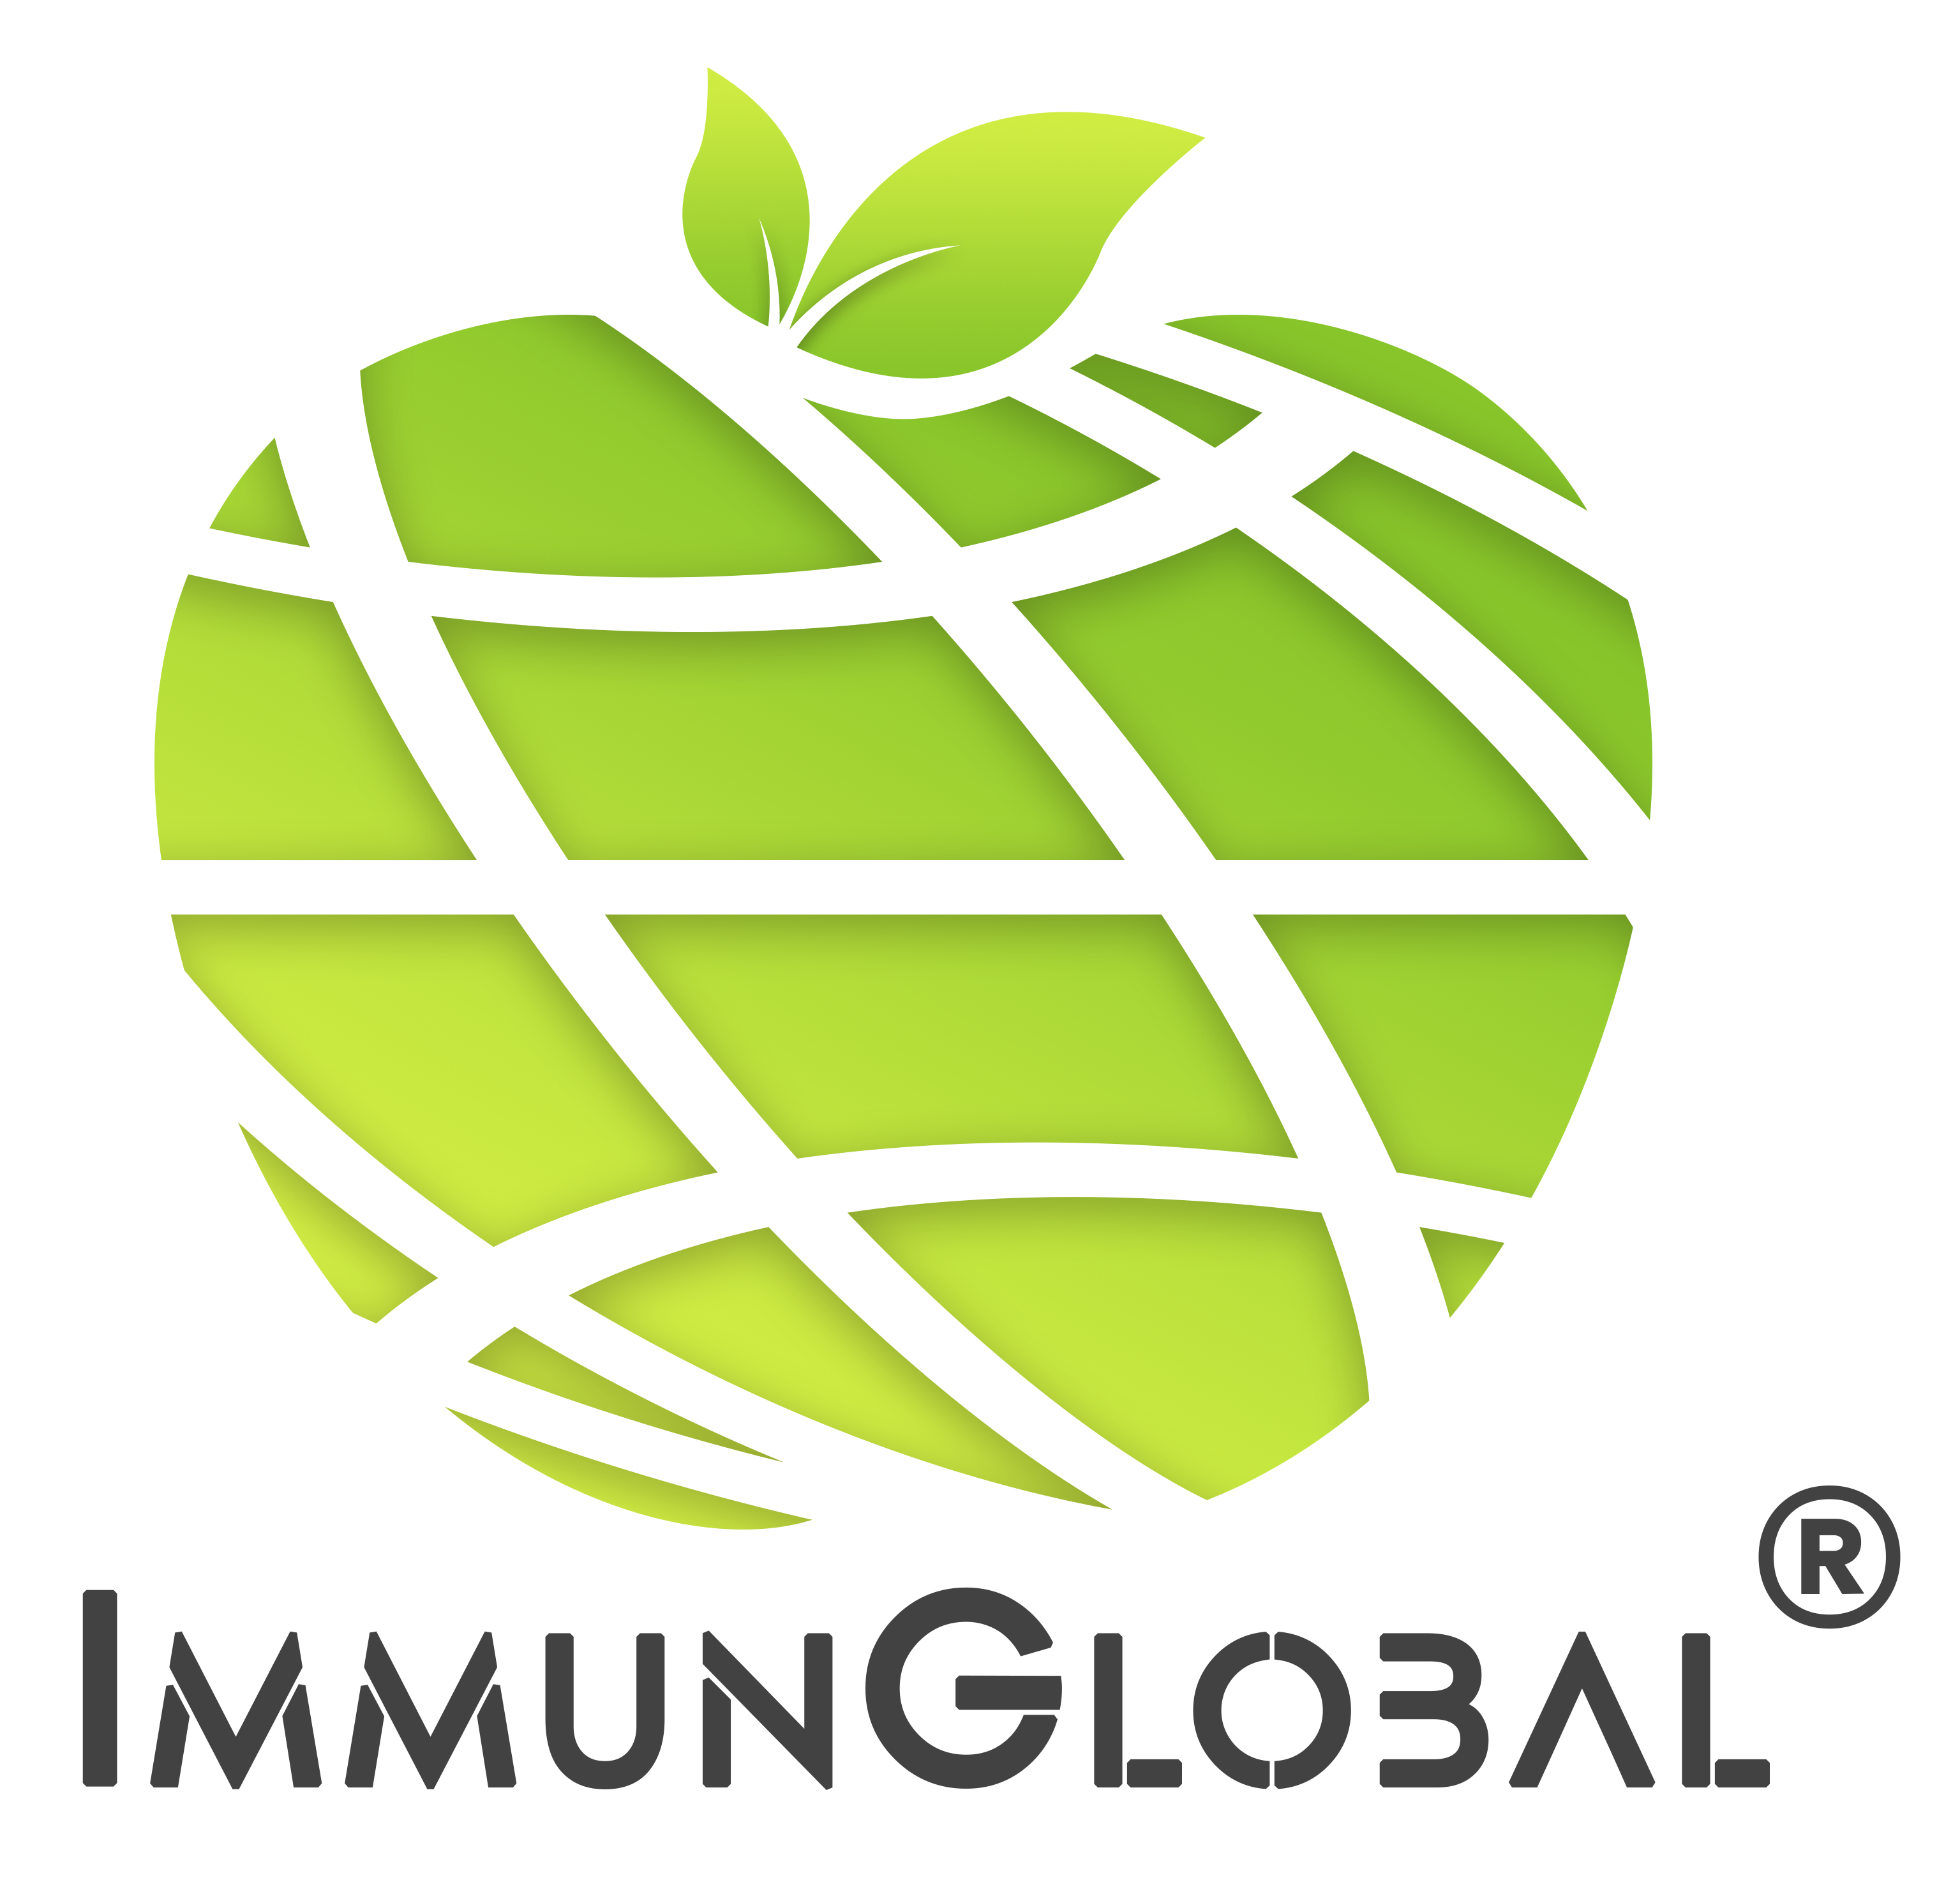 ImmunGlobal 